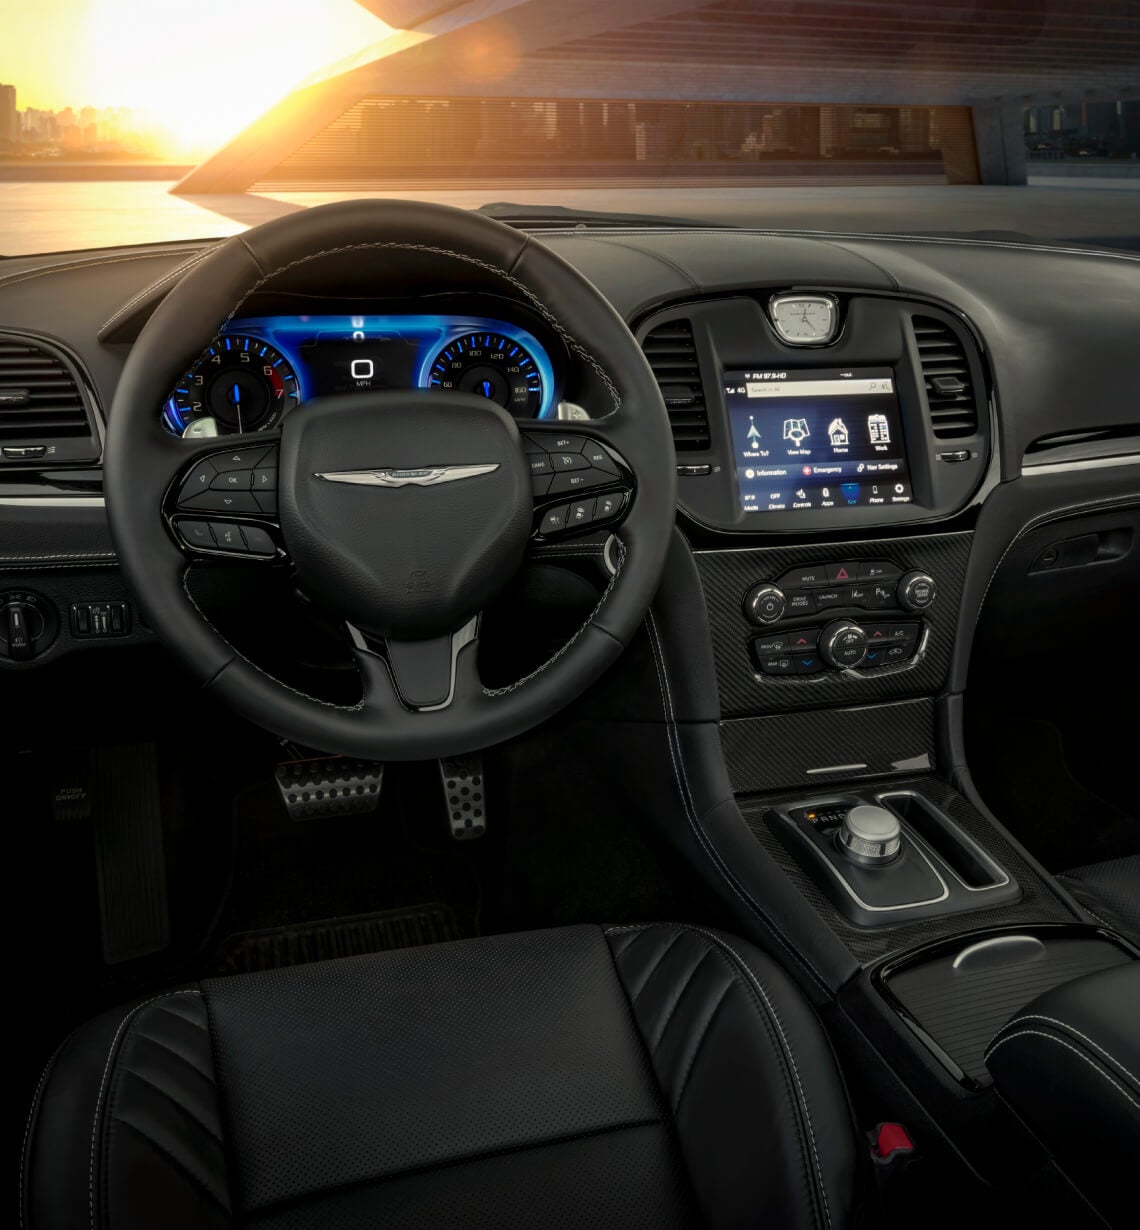 Chrysler 300 Interior: Infotainment & Tech